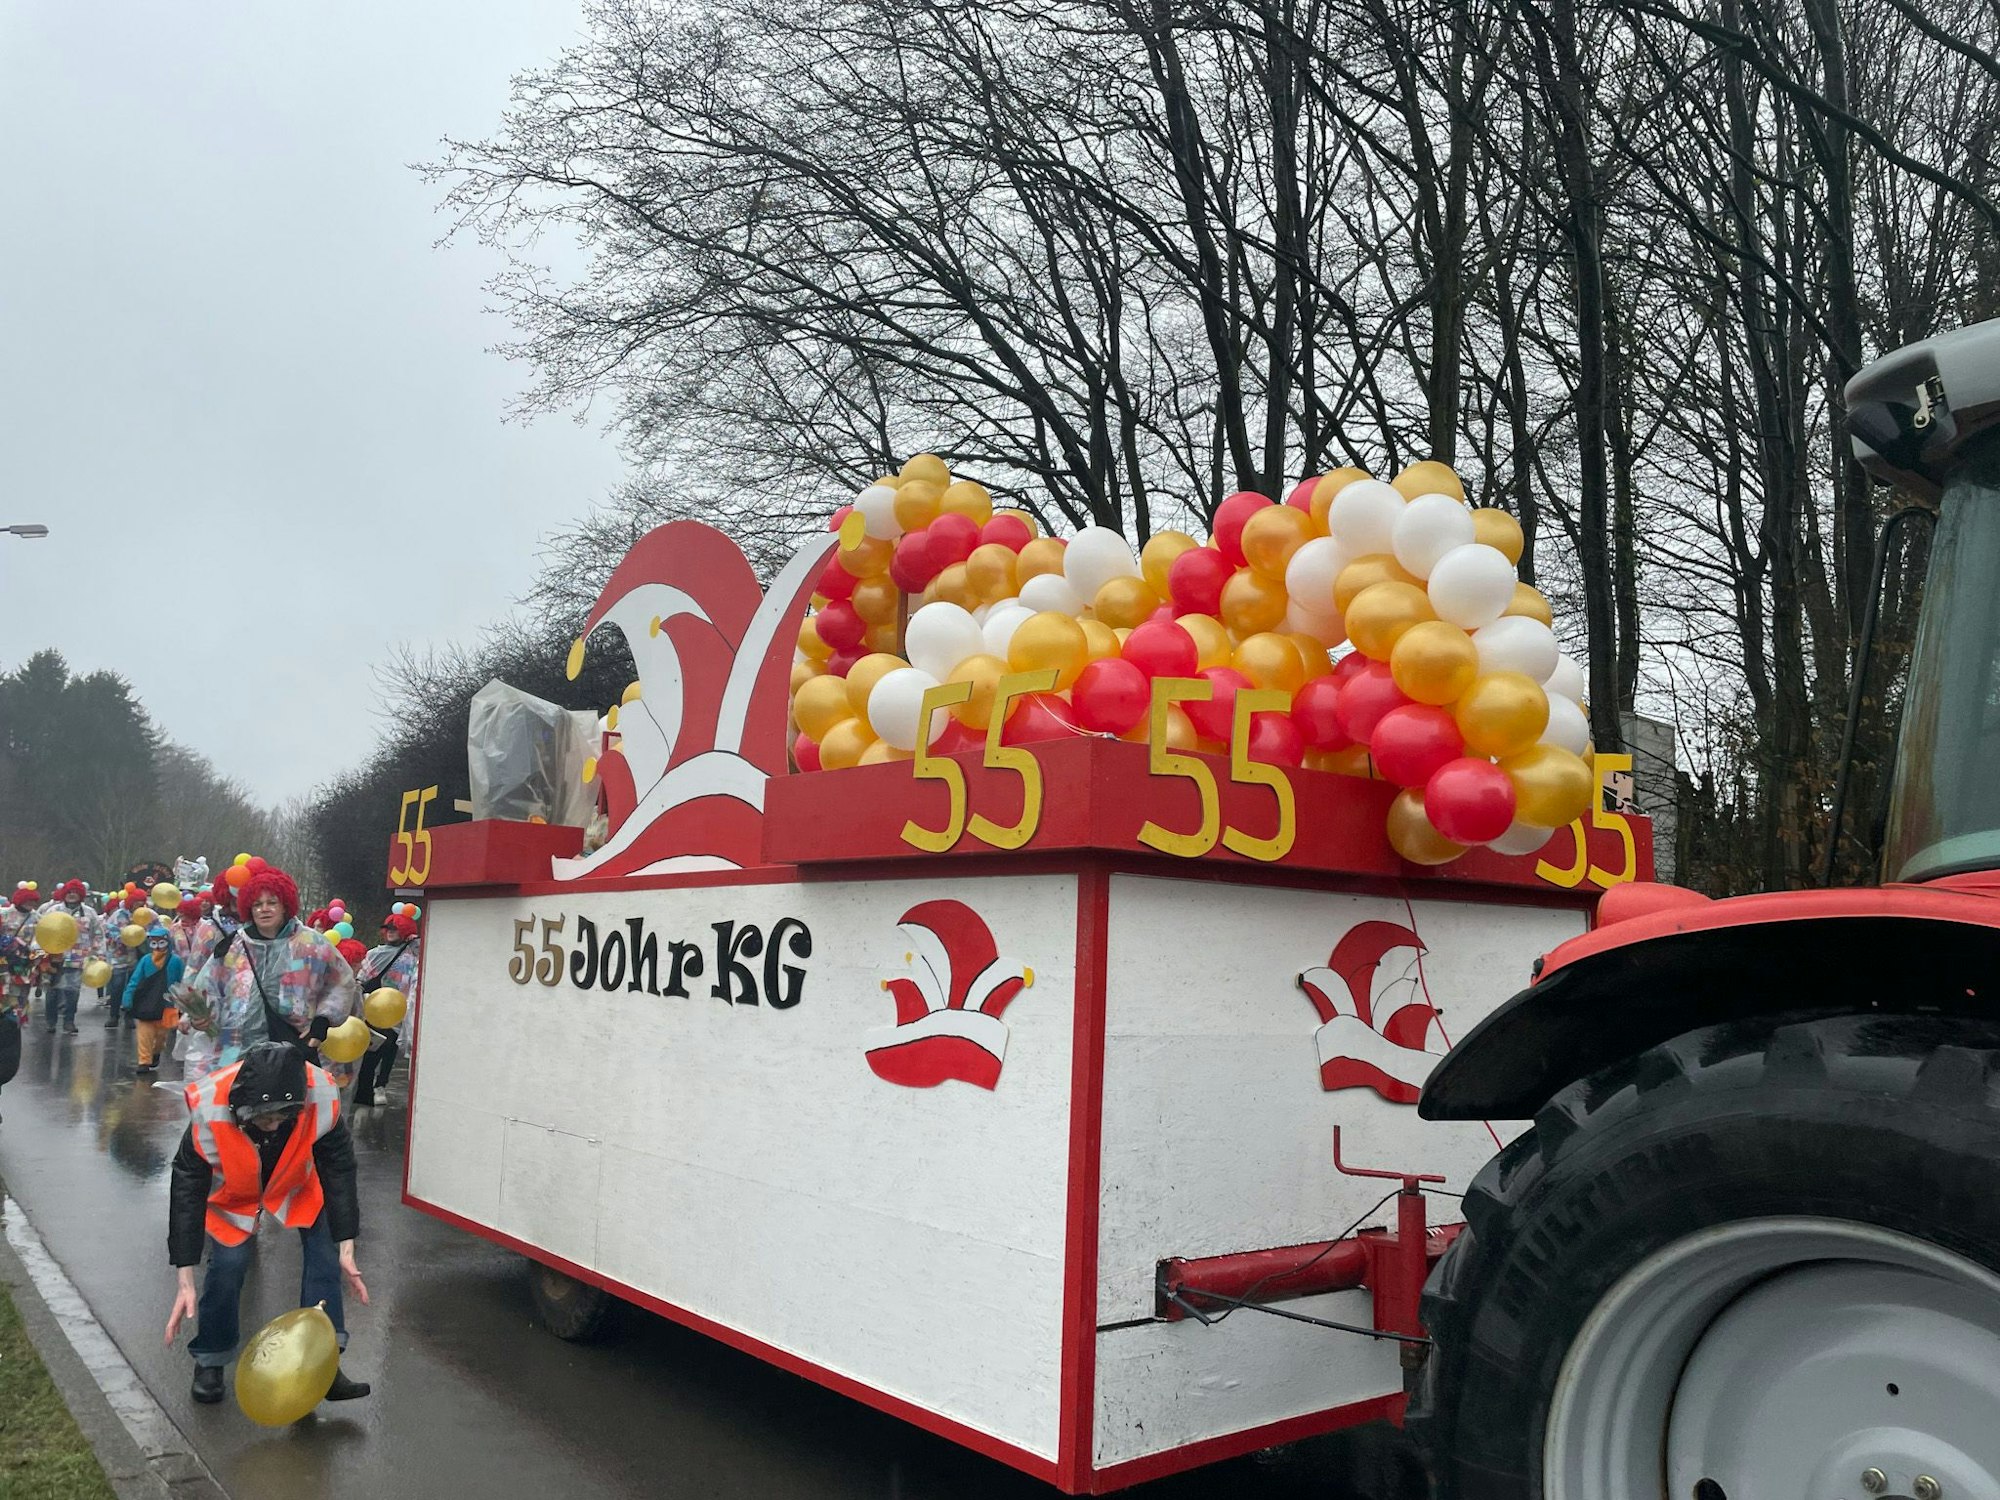 Der Wagen der Odenthaler KG ist mit Dutzenden roten, goldenen und weißen Luftballons geschmückt.